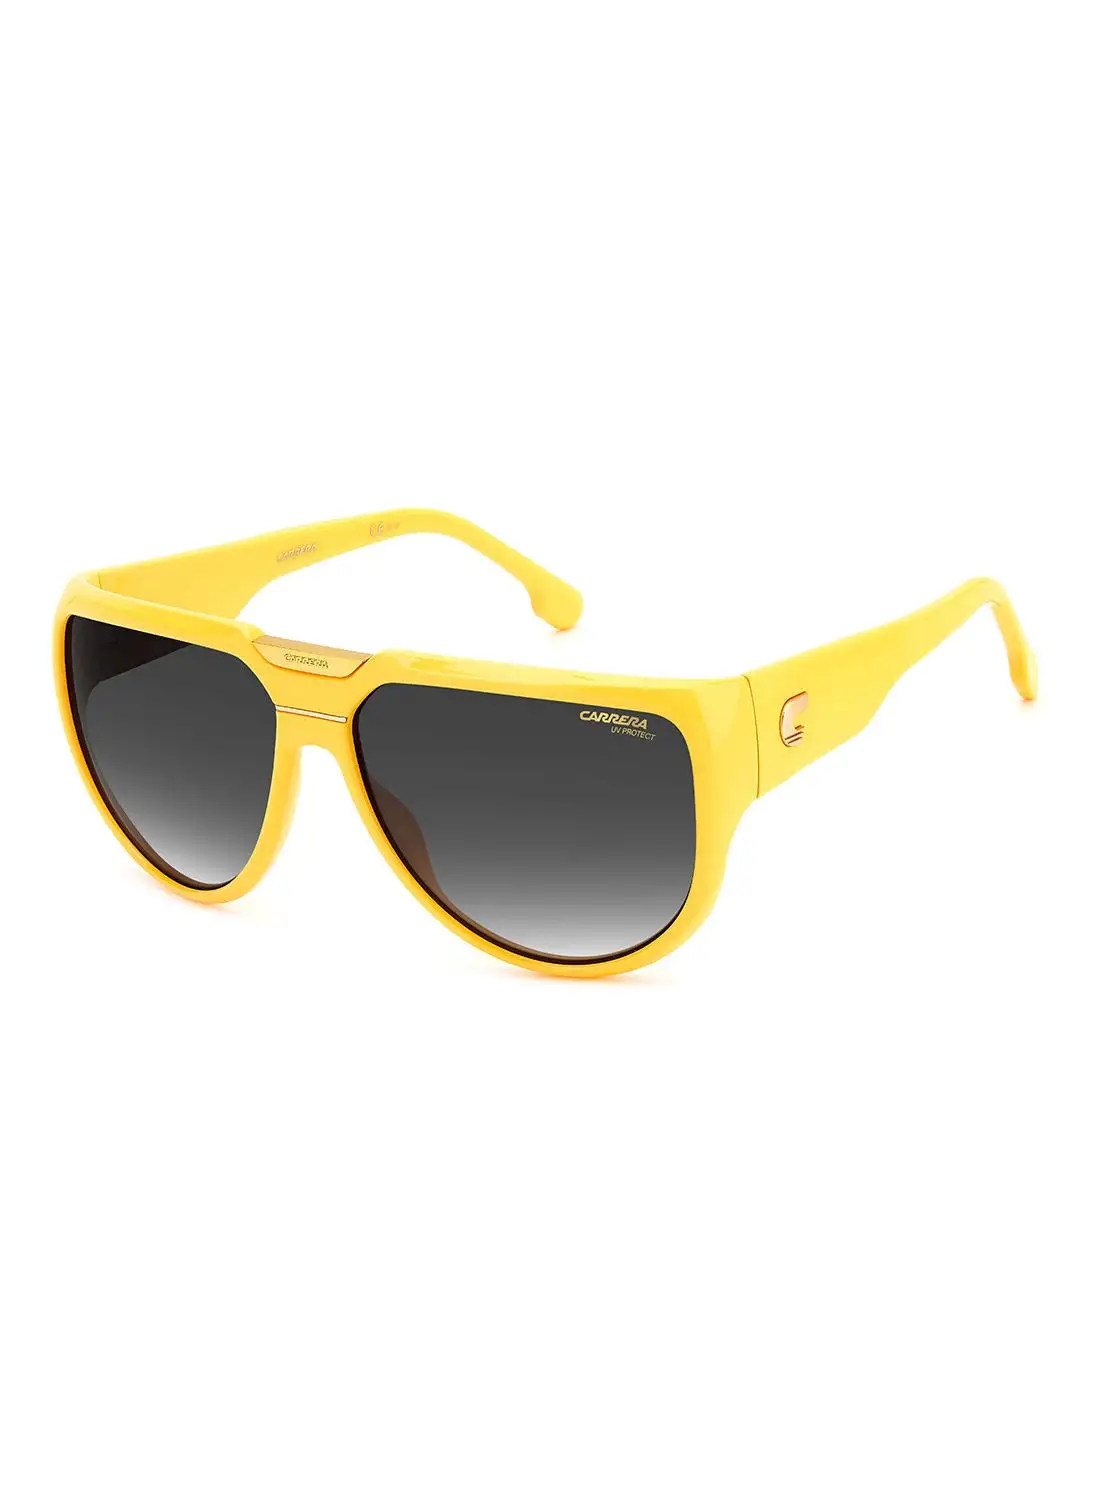 نظارة شمسية بايلوت للحماية من الأشعة فوق البنفسجية للجنسين من كاريرا - فلالاب 13 أصفر 62 - مقاس العدسة: 62 ملم